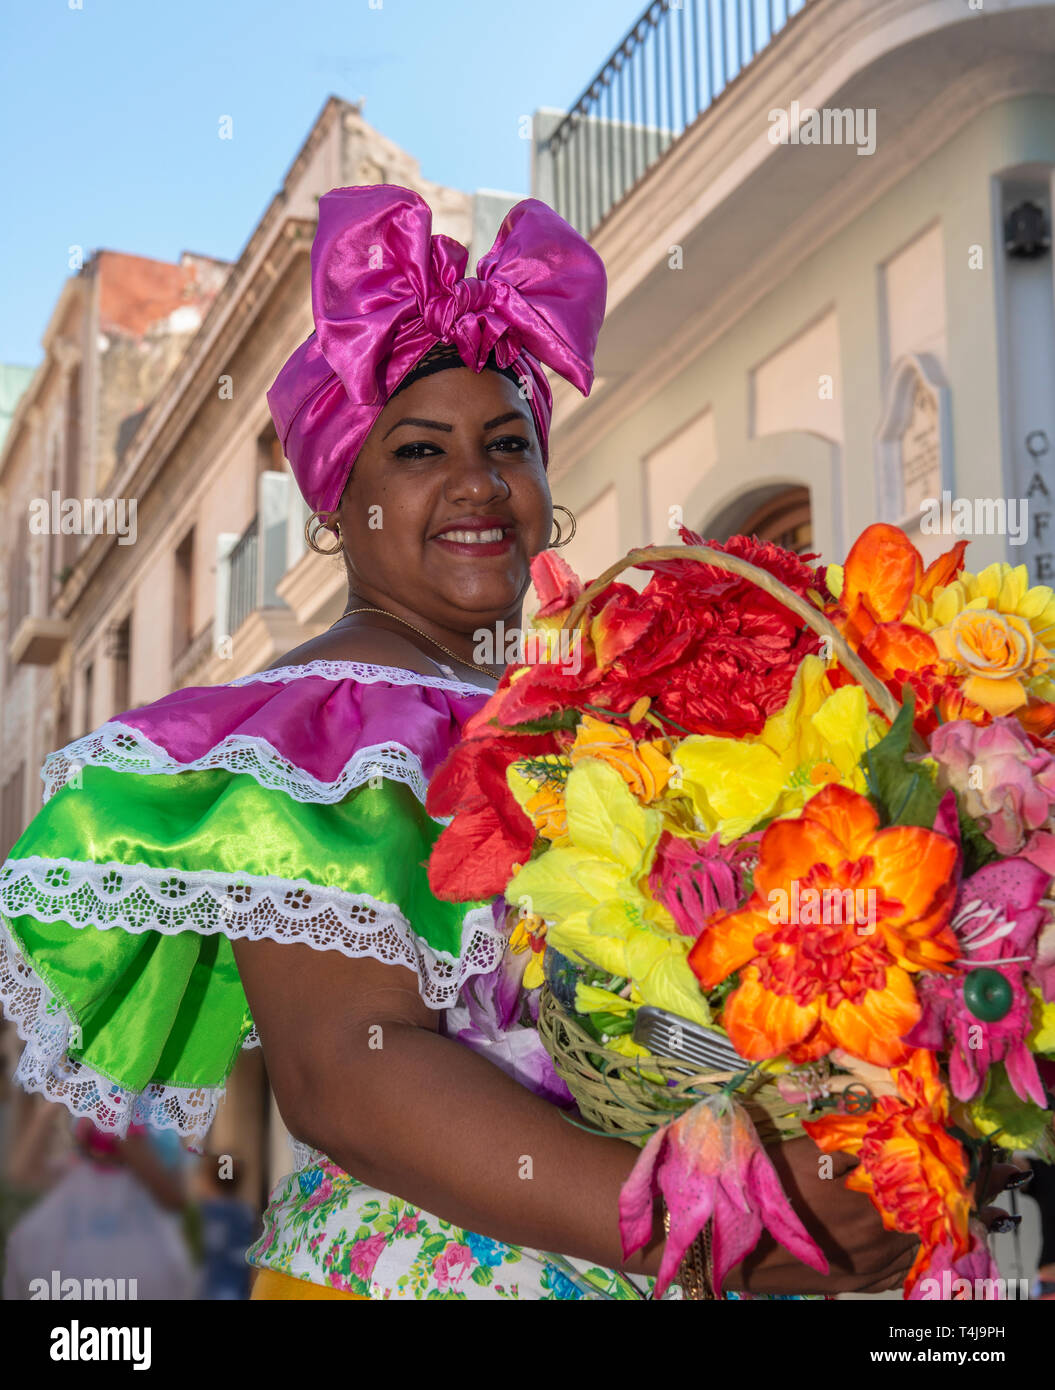 Abito tradizionale cubano immagini e fotografie stock ad alta risoluzione -  Alamy